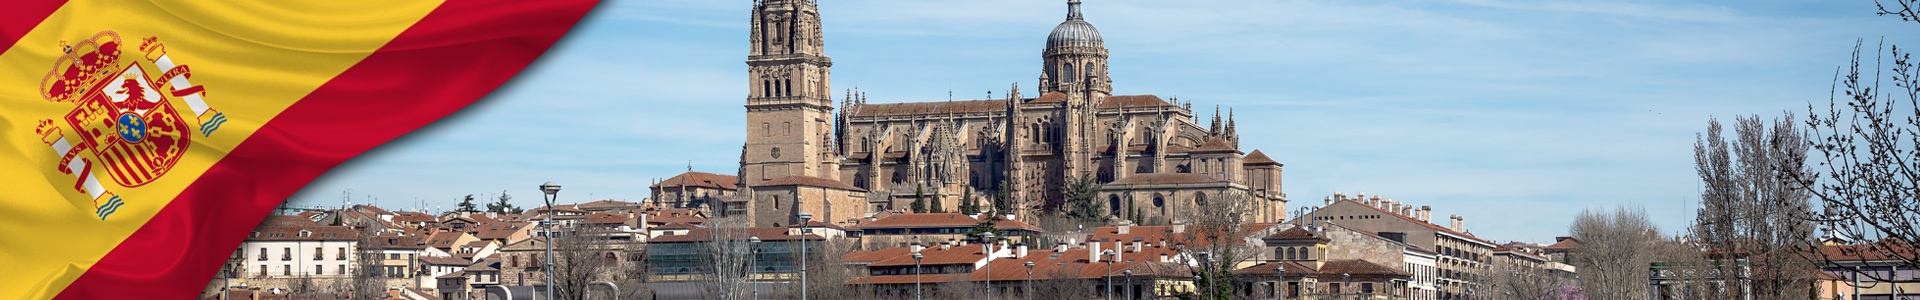 Bandera de España con vista del horizonte de Salamanca con catedral - Salamanca, Castilla y León, España